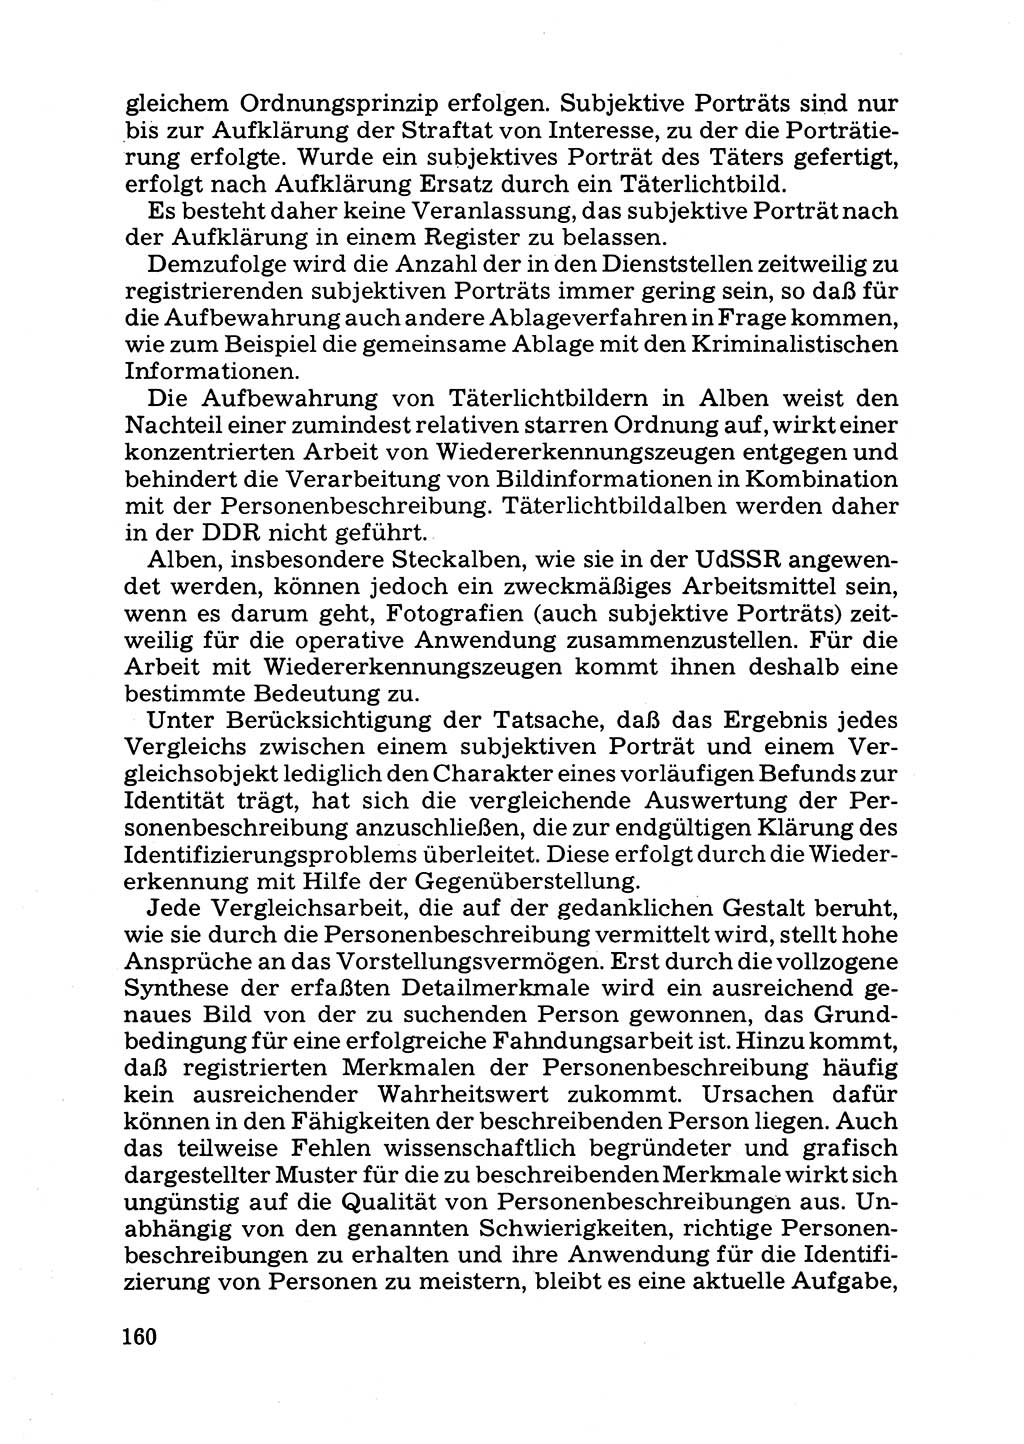 Das subjektive Porträt [Deutsche Demokratische Republik (DDR)] 1981, Seite 160 (Subj. Port. DDR 1981, S. 160)